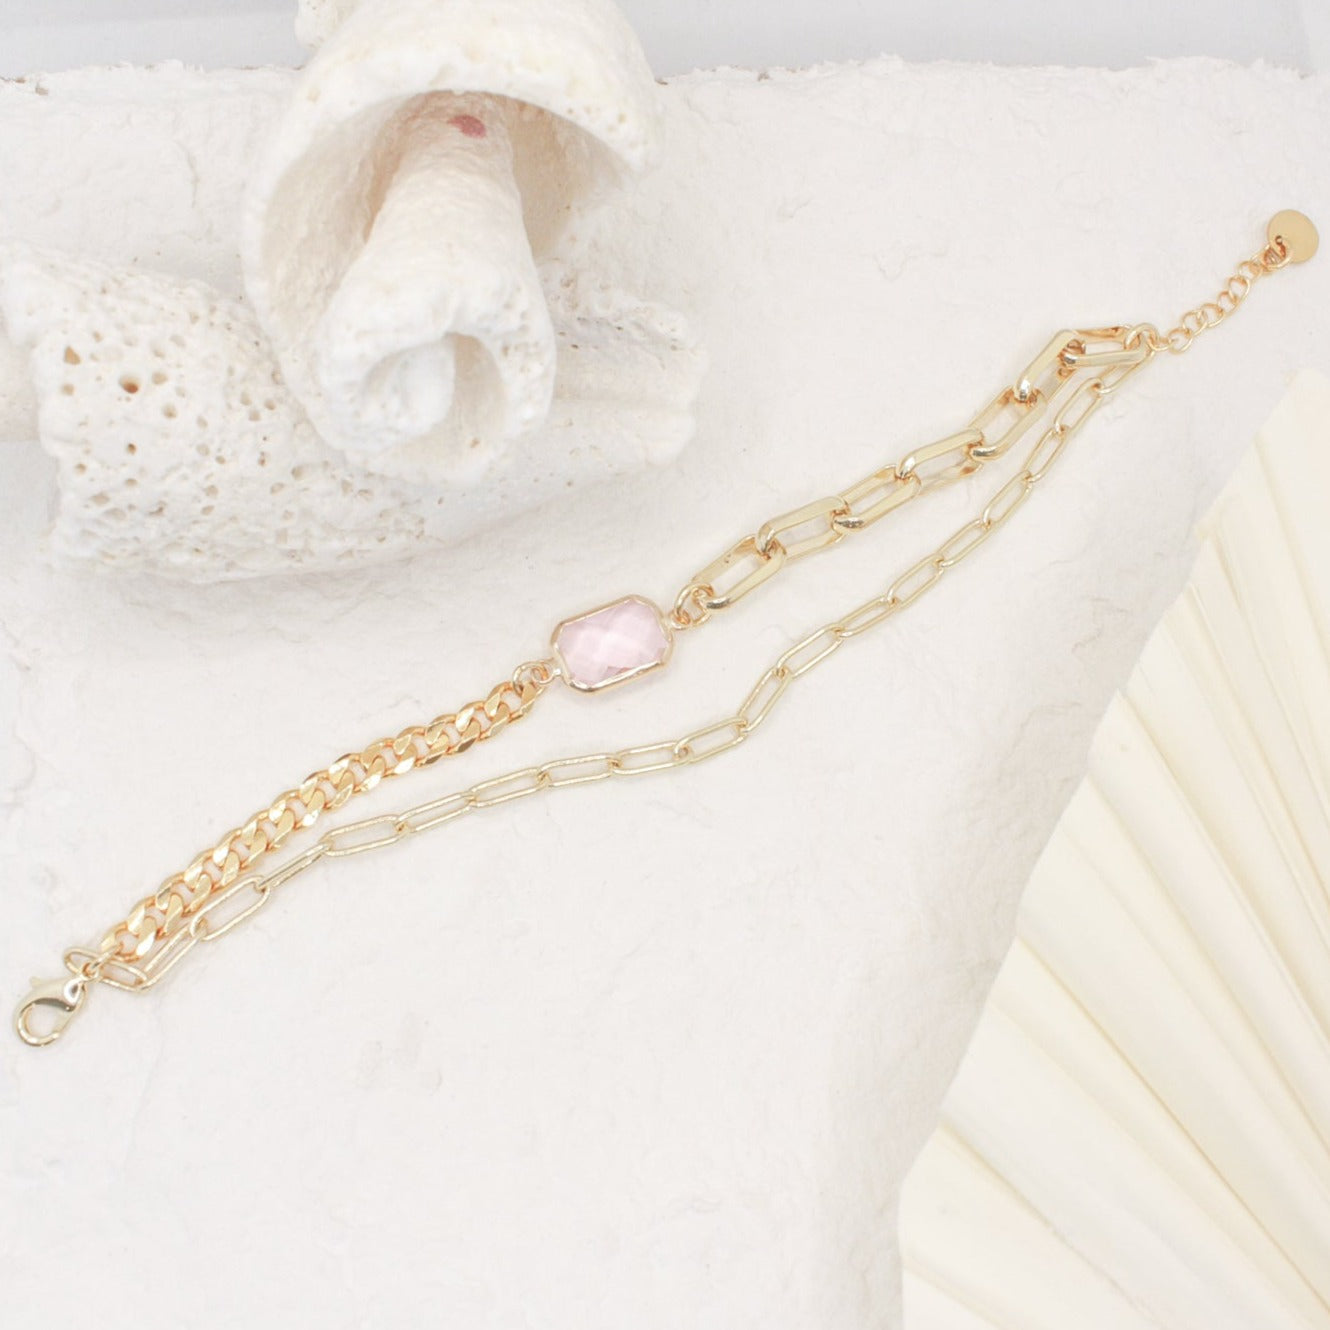 Amelia Paperclip Chain Wrap Bracelet :: Hey Preppy! Pink